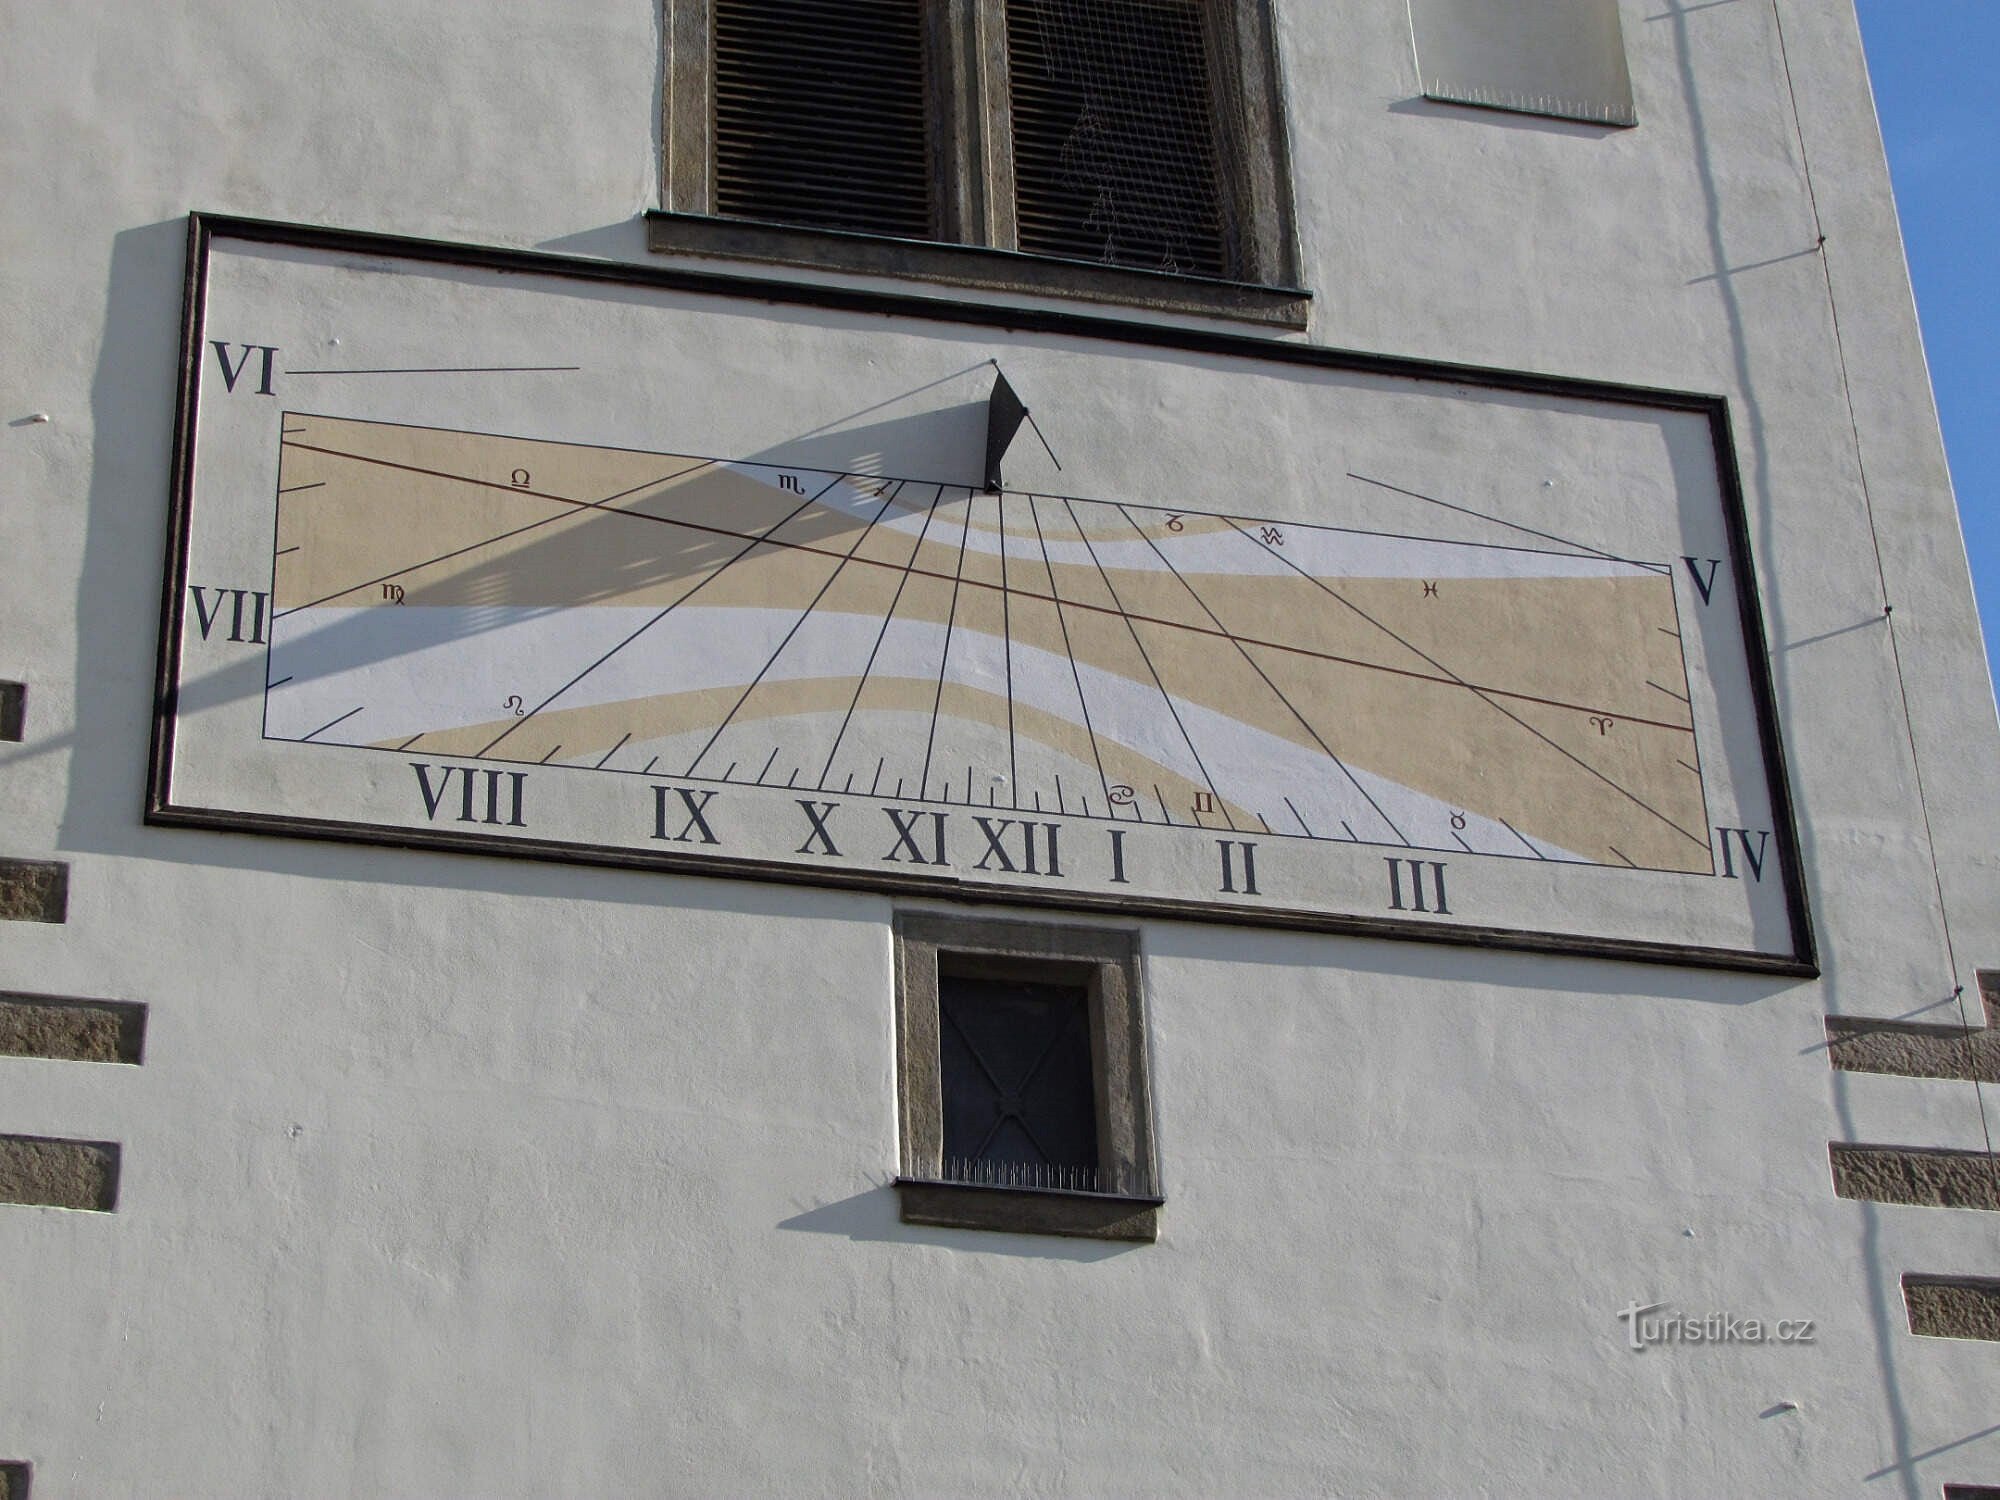 Lipník nad Bečvou - historical sundial